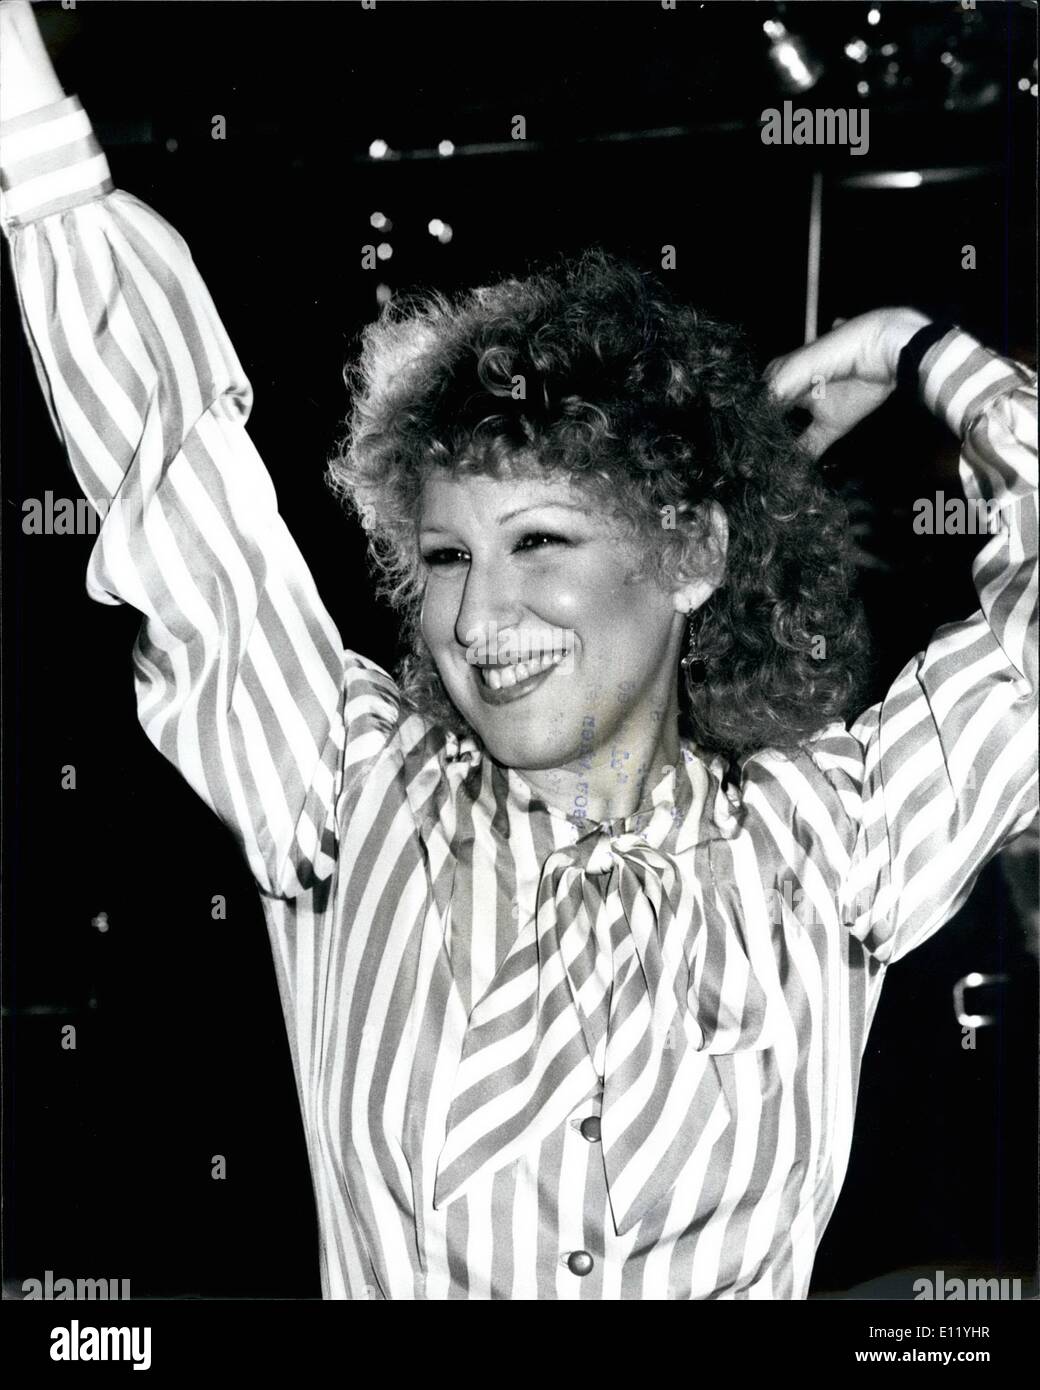 1. Januar 1981 - BETTE MIDLER ist IN Stadt Bette Midler, die unverschämte amerikanischen Gesangsstar ist * Lndon, ihren neuesten Film, göttliche Madnees, welche eine Schau Stringfellow im oberen St. Martine Ione, in London gestern zu fördern. Sie sagte, dass sie '' bereinigt hat, '' seit ihrer berühmten TV-Begegnung mit Michael Parkinson, wenn sie bot an, auf seine Show Streifen. Foto-SHOW: Bette Miper im Bild während der Pressekonferenz in London gestern Stockfoto